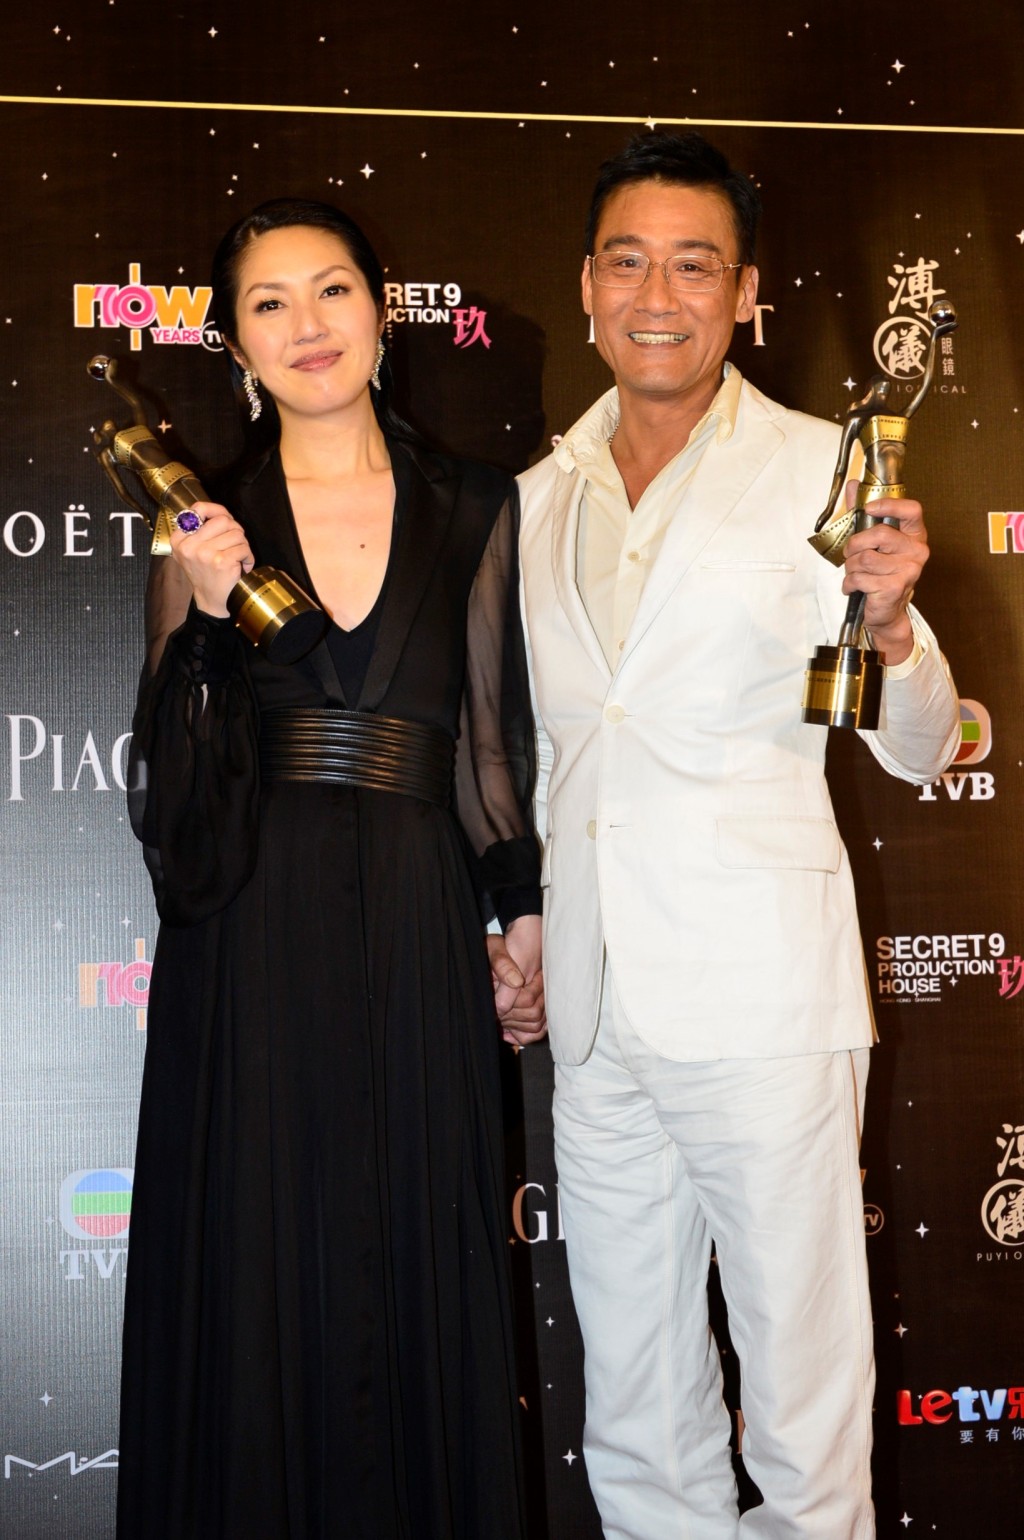 鄭秀文2013年輸給憑《春嬌與志明》提名的大熱楊千嬅。